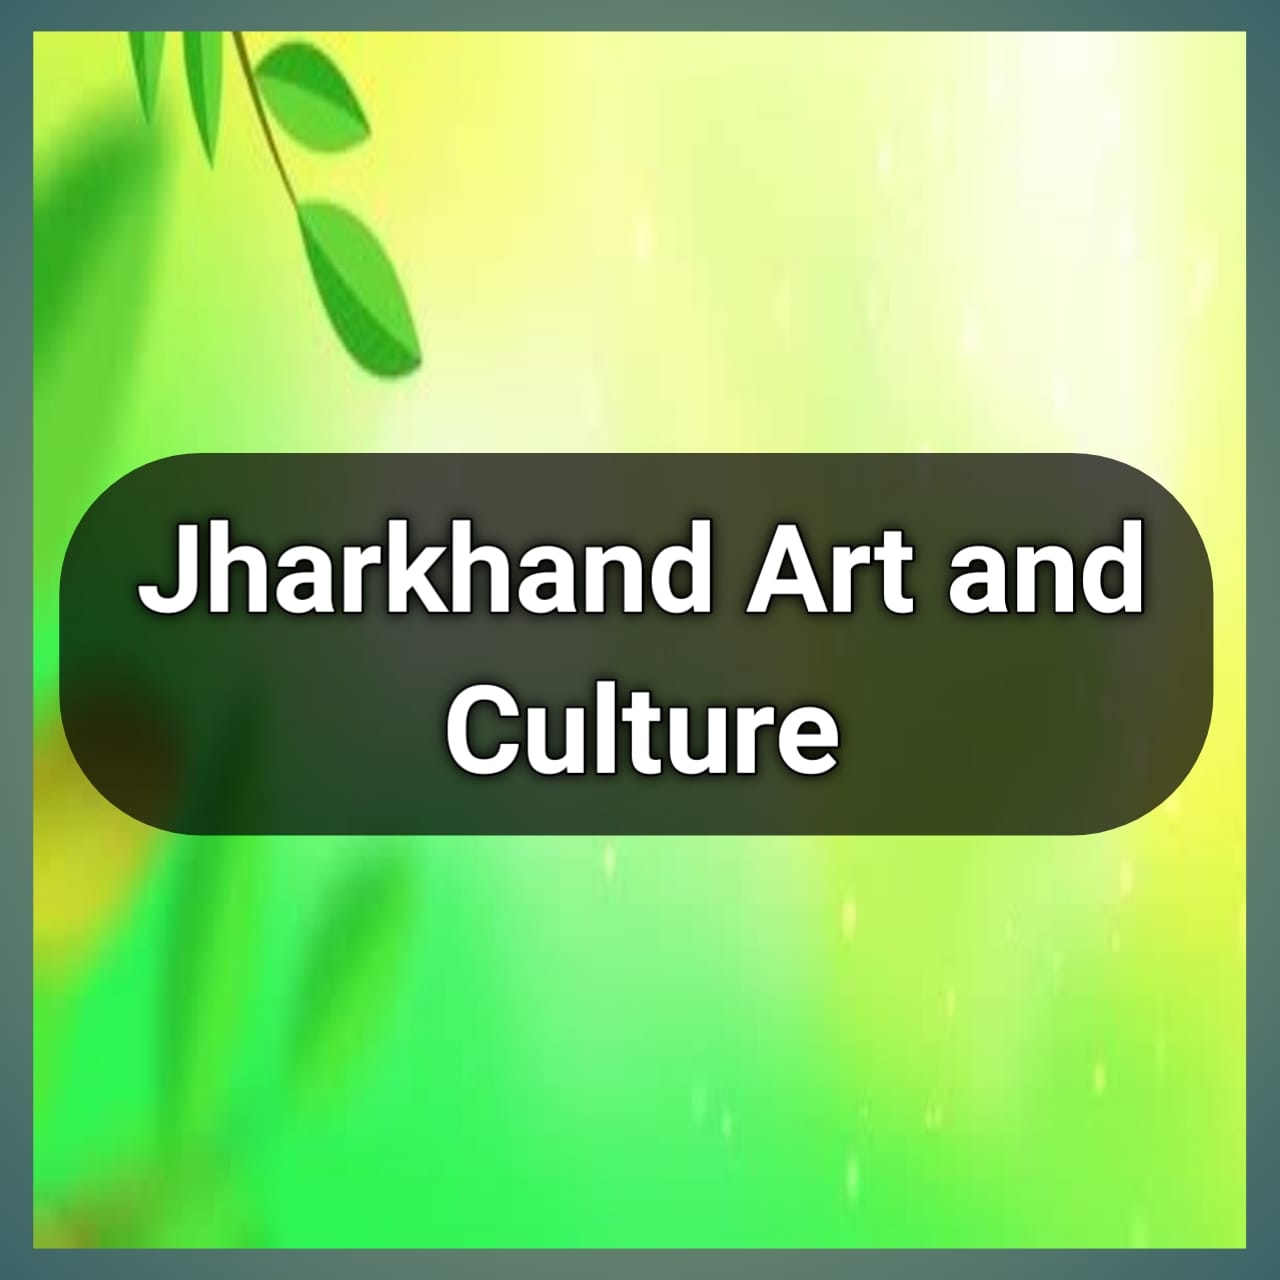 Jharkhad Art and Culture 